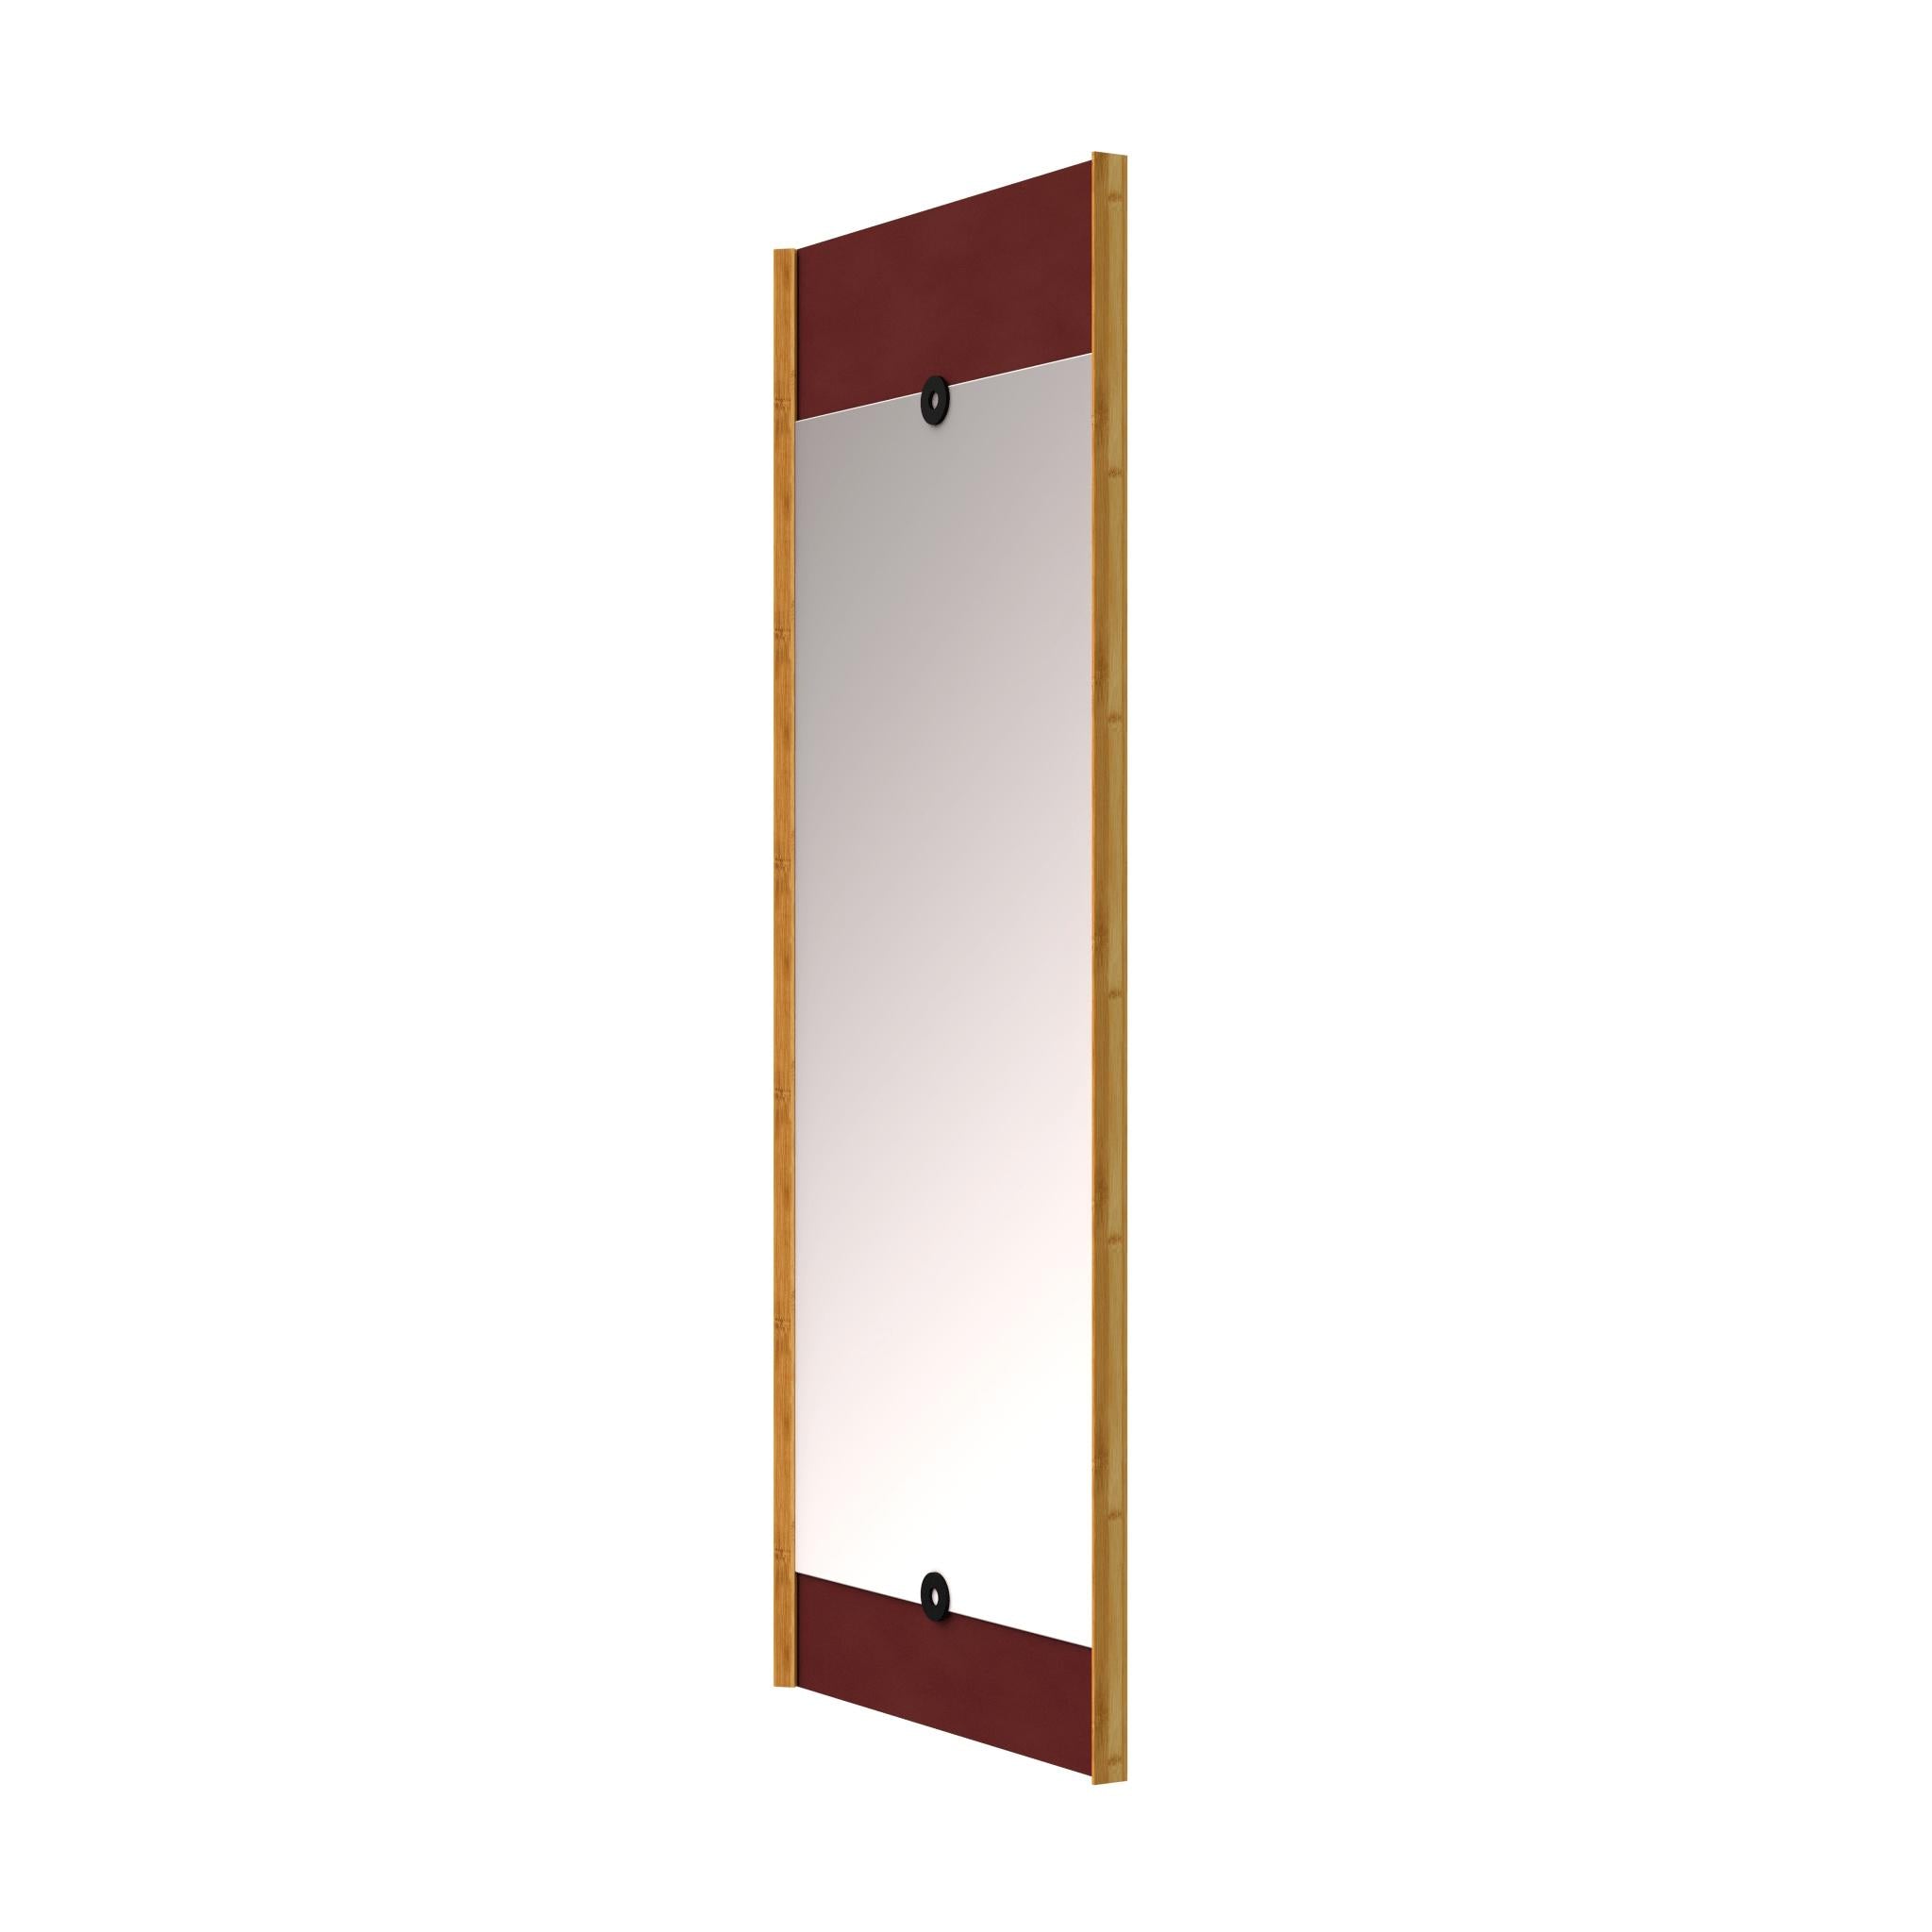 We Do Wood Miroir de couche Bourgogne rouge, 125 cm